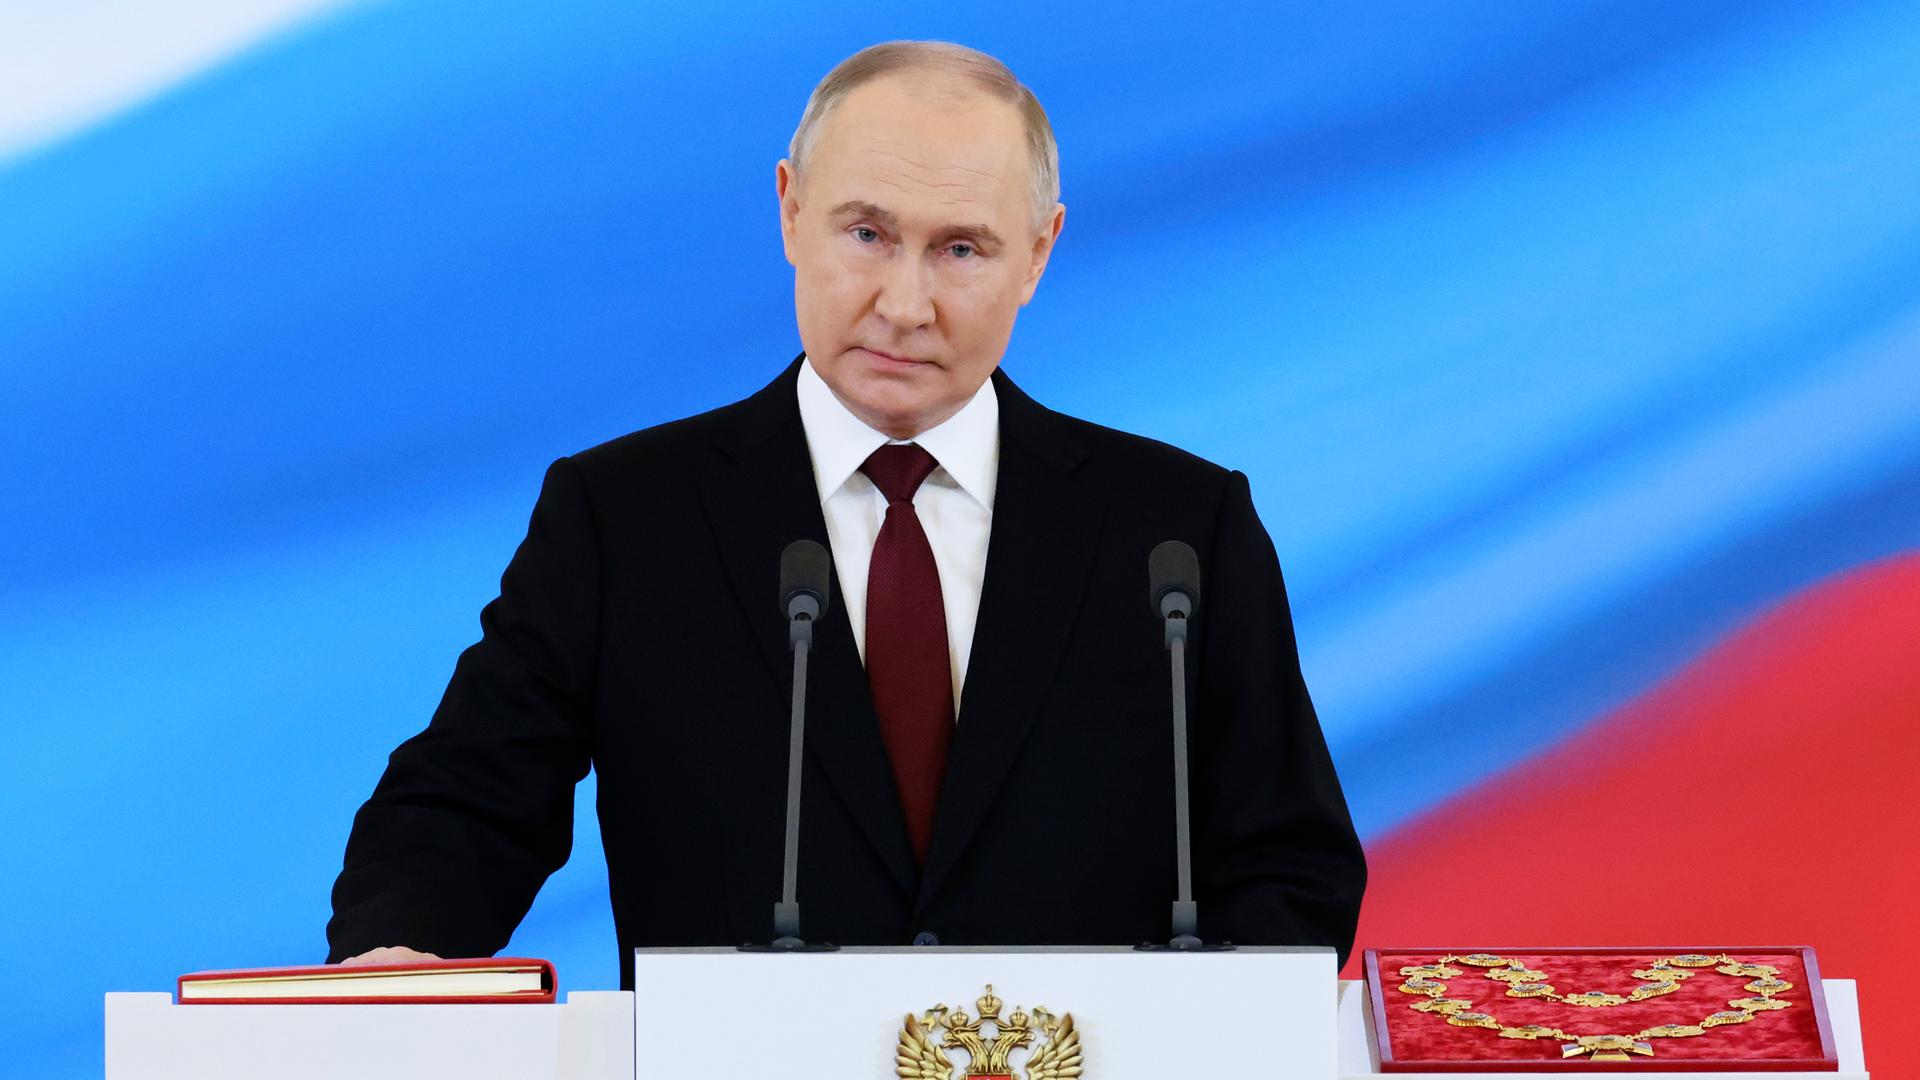 Putin steht an einem Pult und hält bei der Vereidigung die rechte Hand auf die Verfassung.